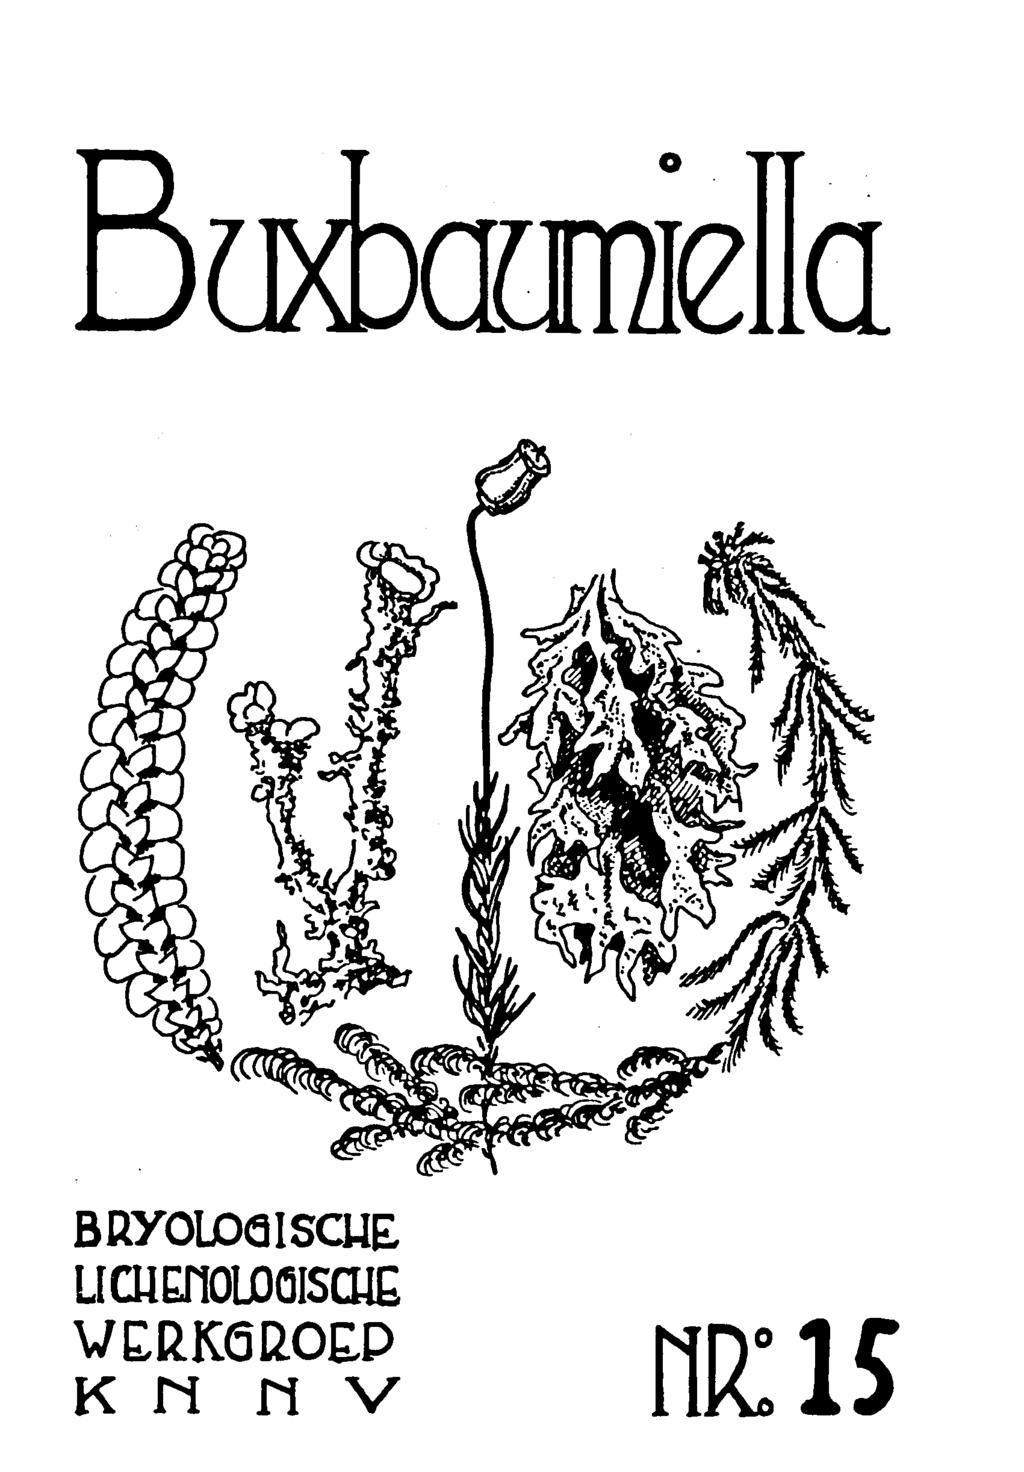 Buxbaumiella BRY0ÜDQ1SCUE